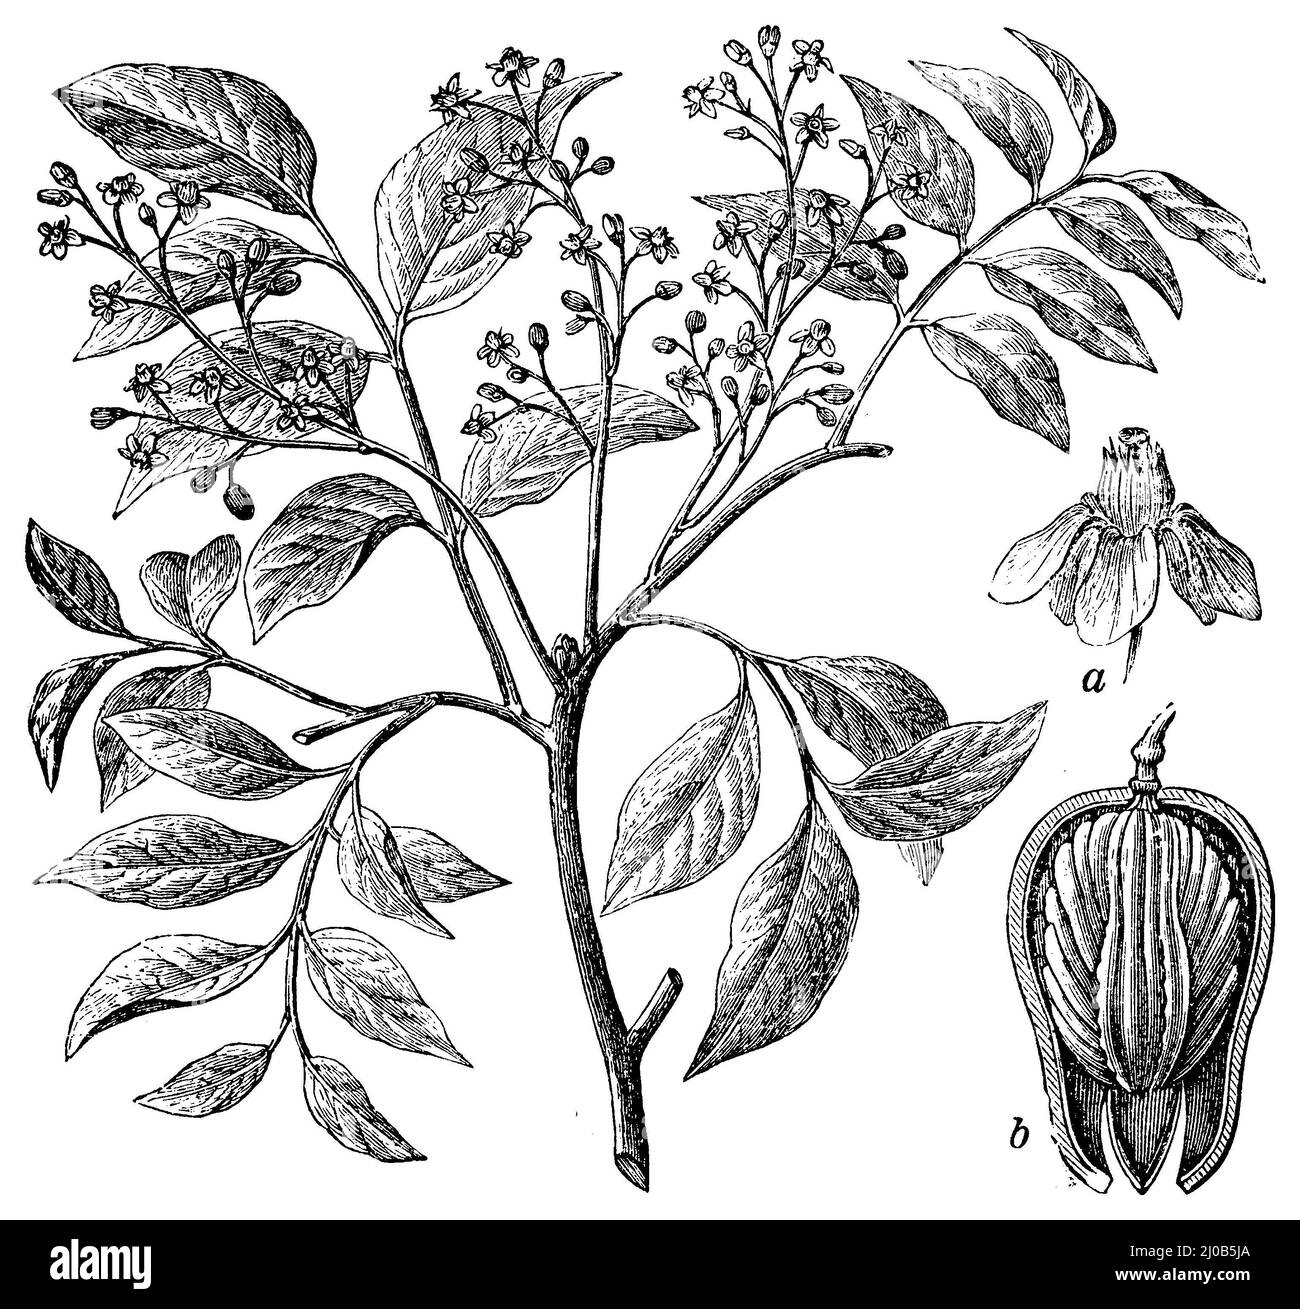 Amerikanisches Mahagoni, eine Blume, b Frucht durchgeschnitten, Swietenia mahagoni, (, ), Westindisches Mahagoni, A Blüte, b Frucht durchgeschnitten, acajou d'Amériqu, a Fleur, b fruit coupé en deux Stockfoto